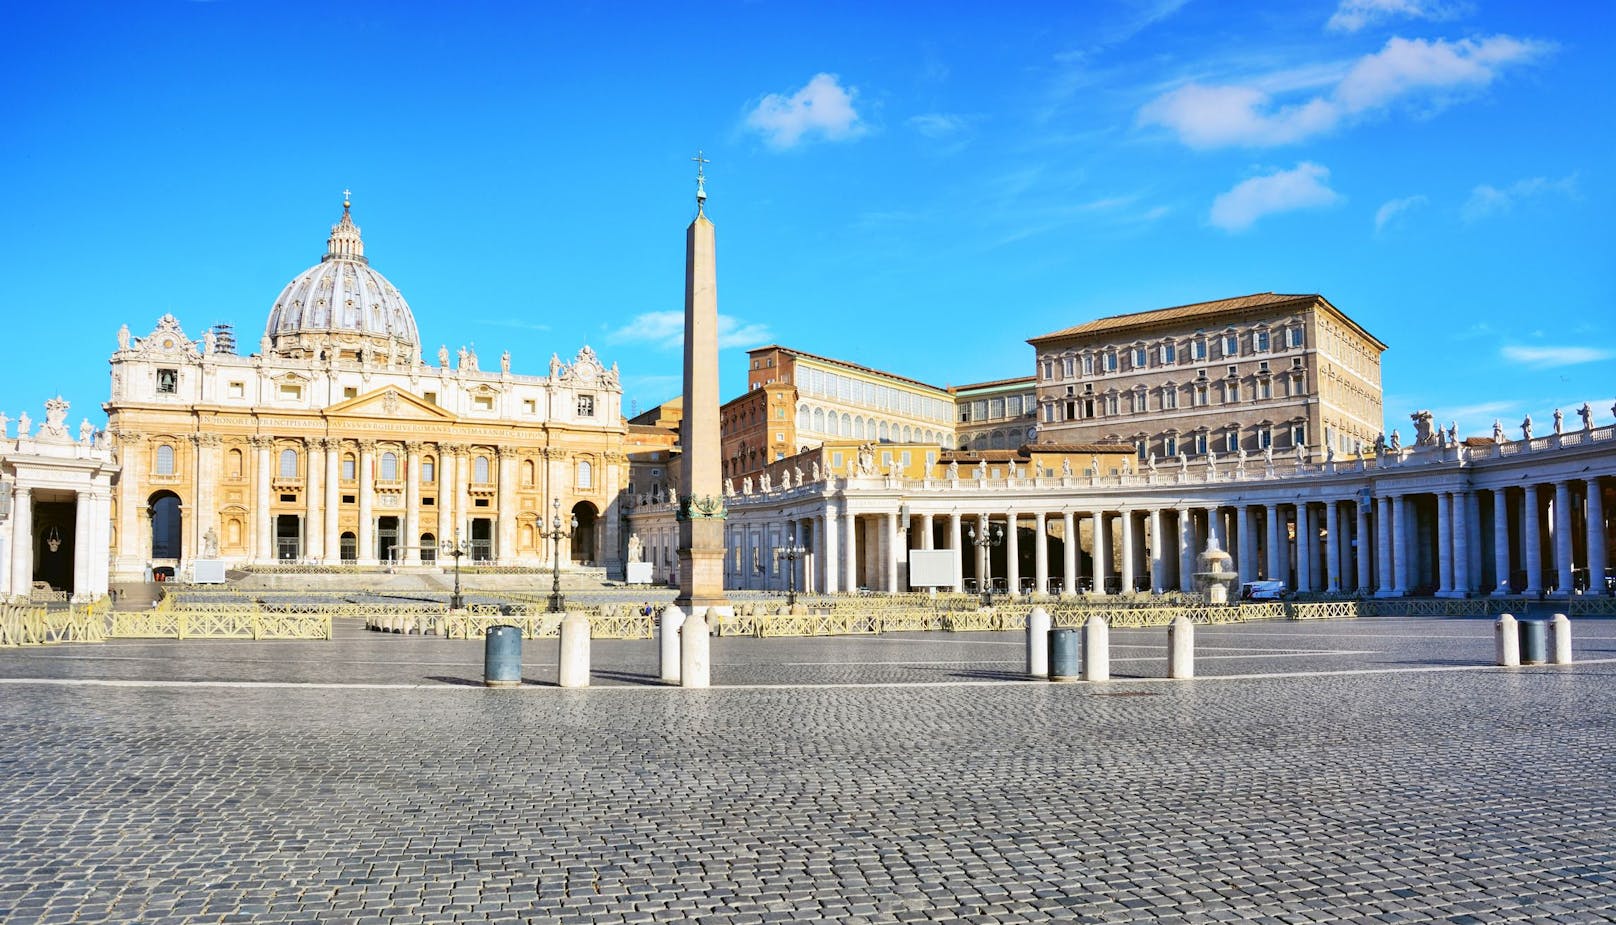 Auto rast durch Tor in Vatikanstaat – Mann festgenommen